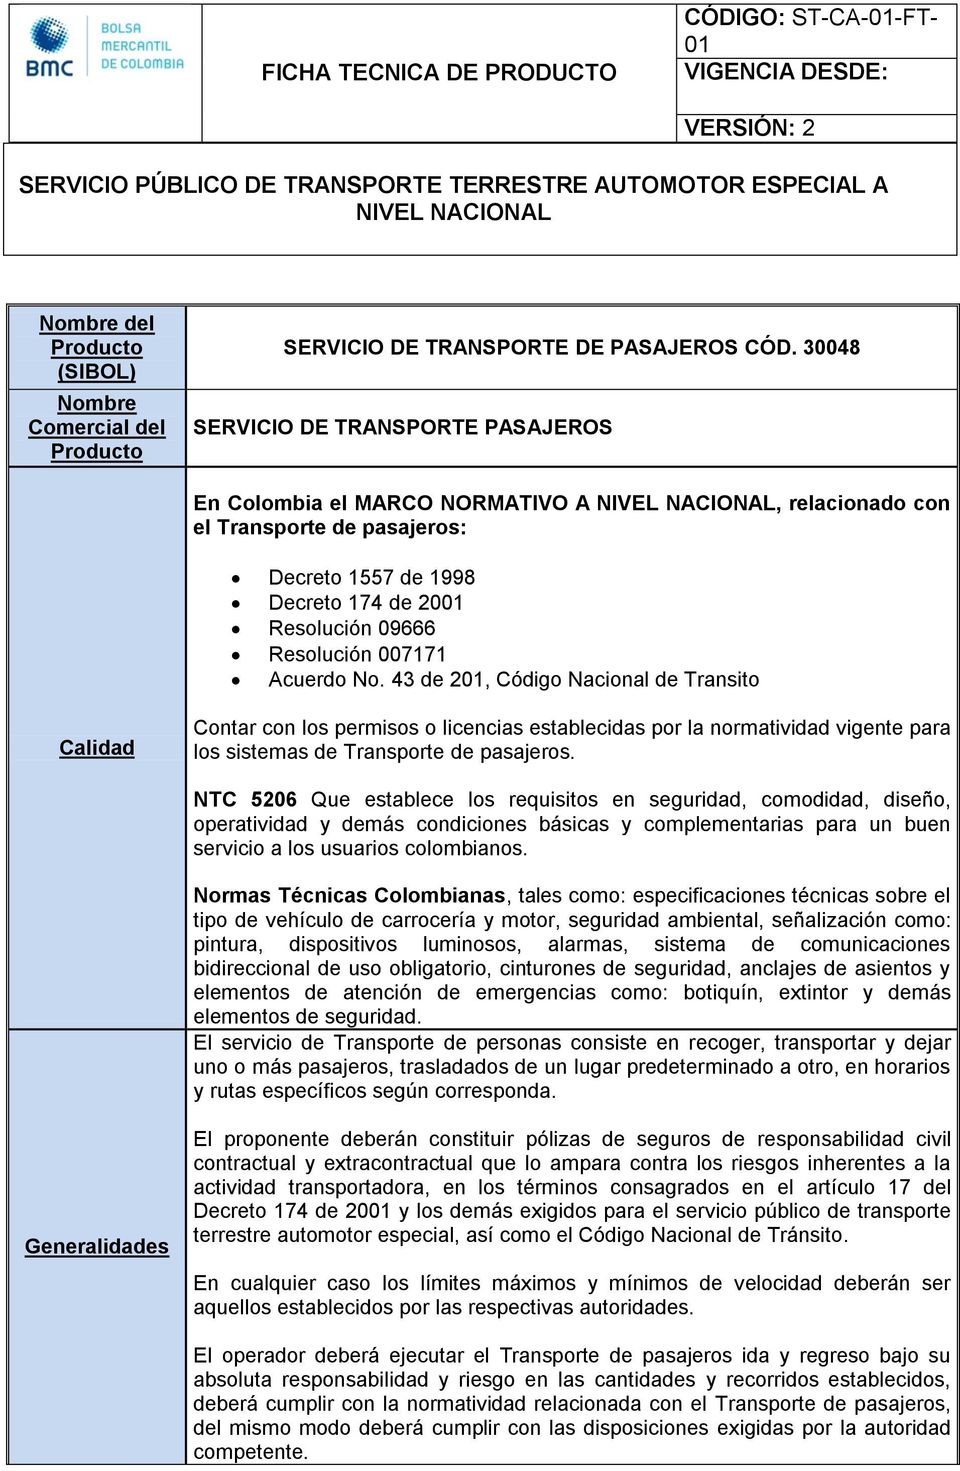 30048 SERVICIO DE TRANSPORTE PASAJEROS En Colombia el MARCO NORMATIVO A NIVEL NACIONAL, relacionado con el Transporte de pasajeros: Decreto 1557 de 1998 Decreto 174 de 2001 Resolución 09666